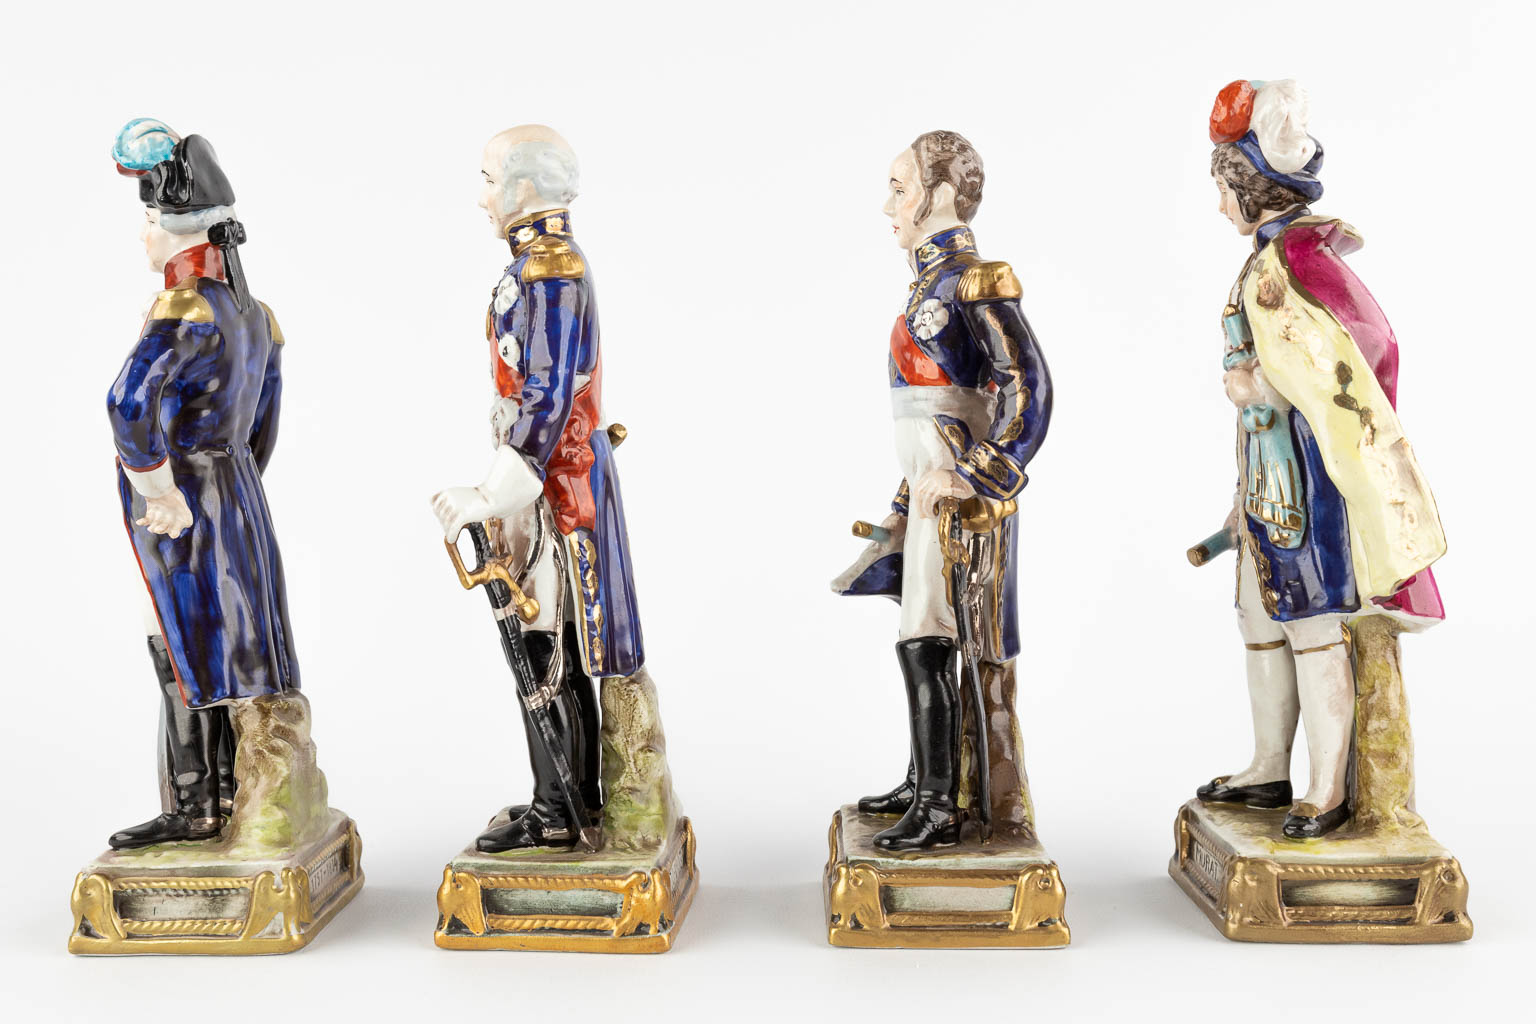 Napoleon Bonaparte and 9 Generals, Polychrome porcelain, 20th C (D:7 x W:9 x H:23 cm)